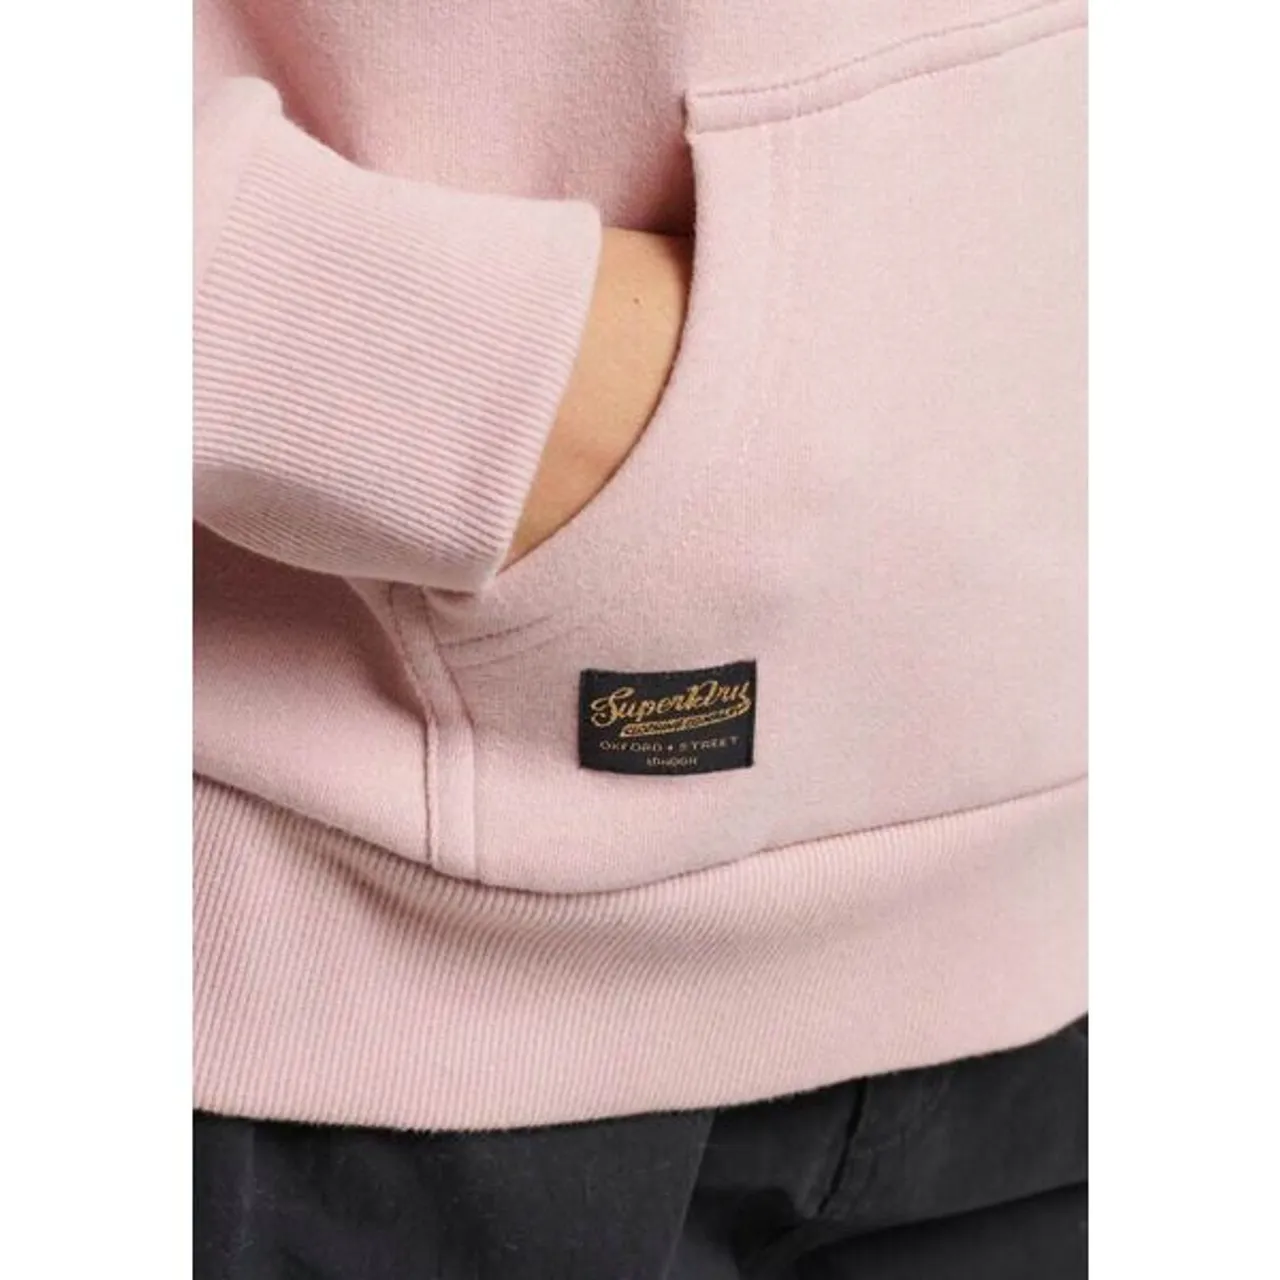 Kapuzensweatshirt SUPERDRY "SU-LUXE METALLIC LOGO HOODIE" Gr. L, pink (vintage blush pink) Damen Sweatshirts